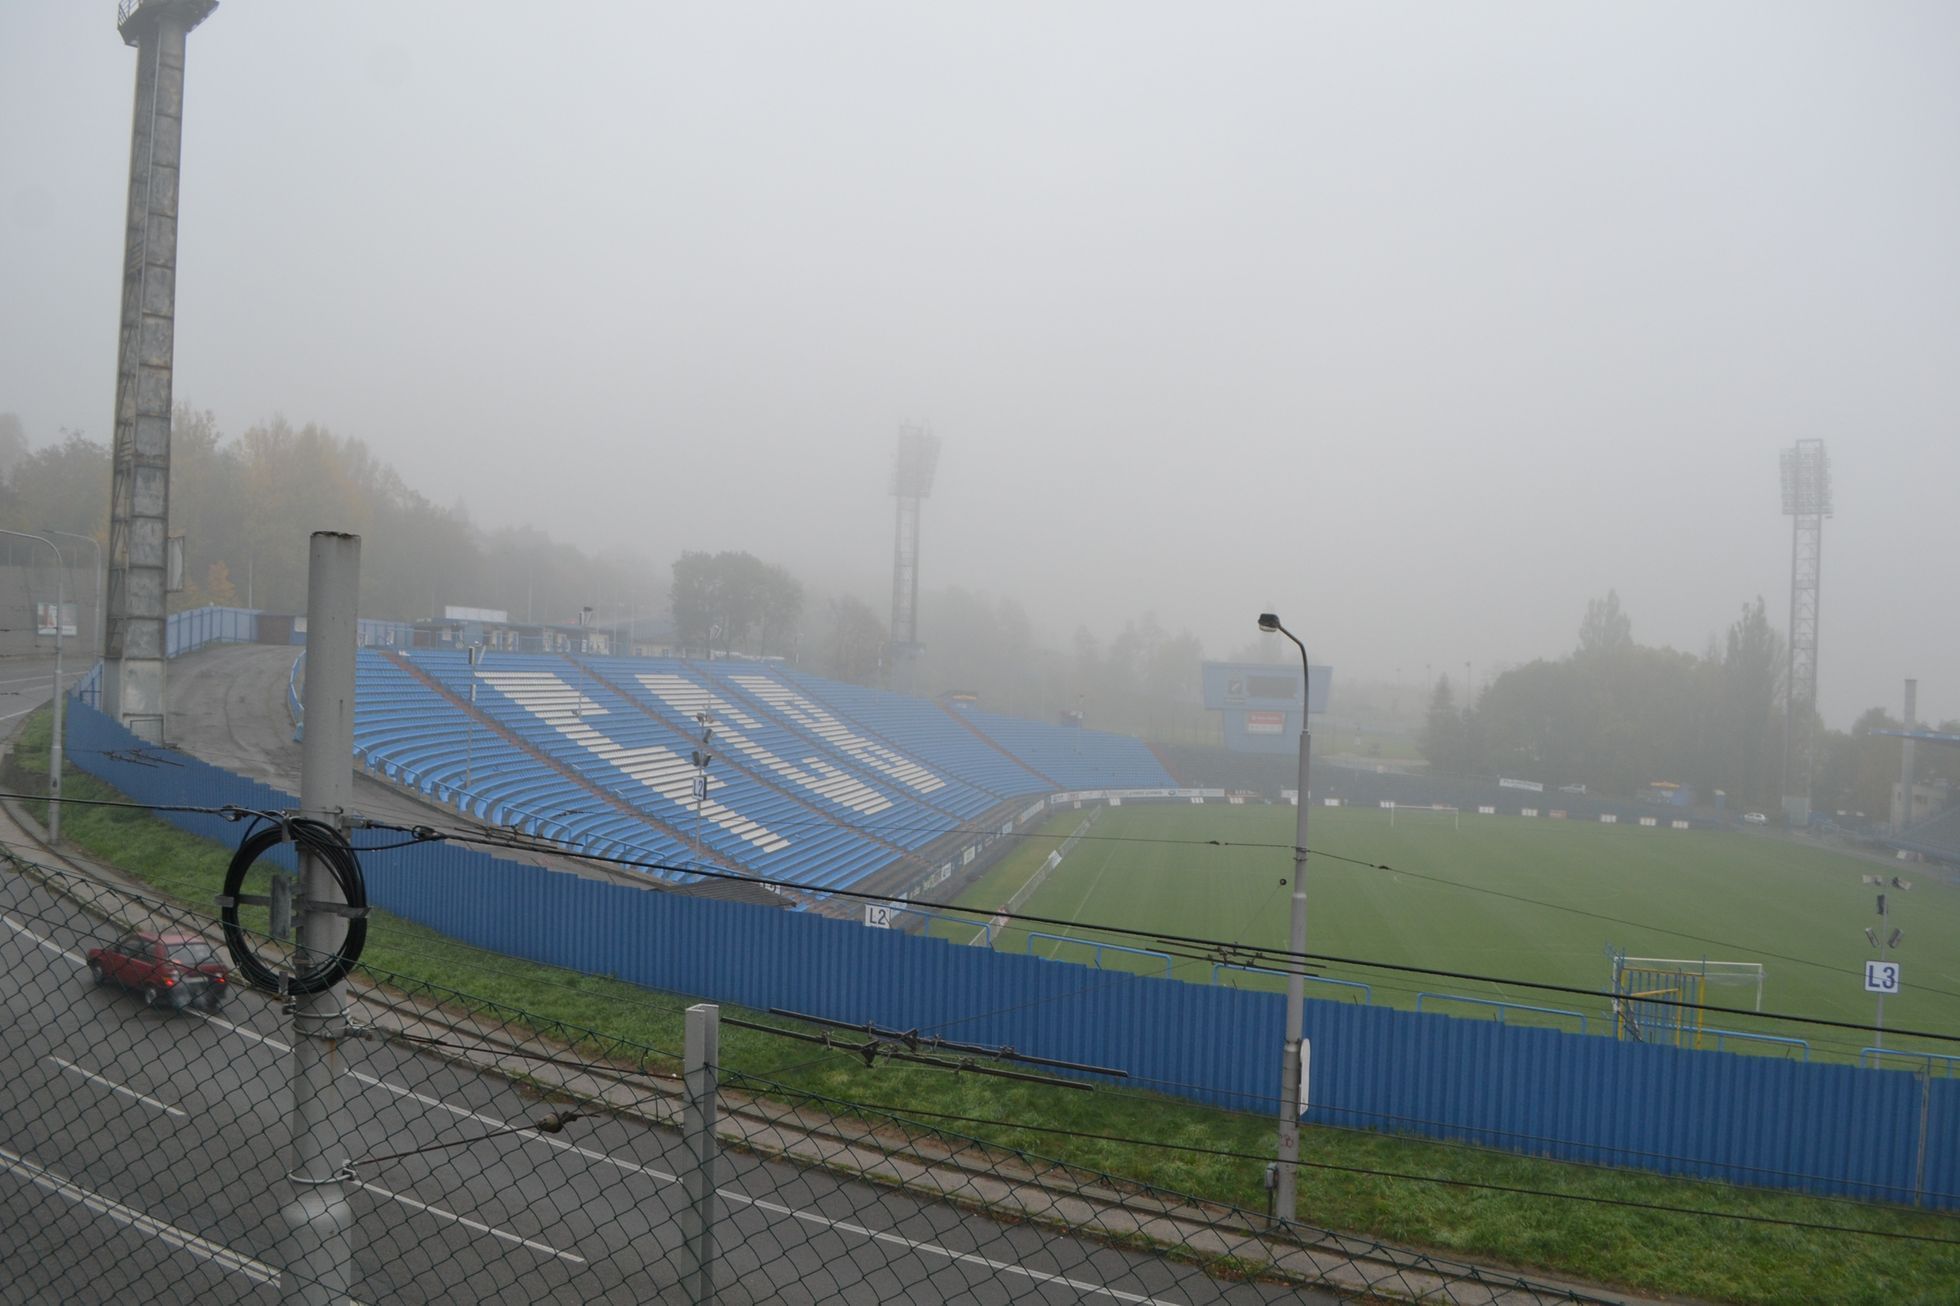 Ostravský stadion Na Bazalech.